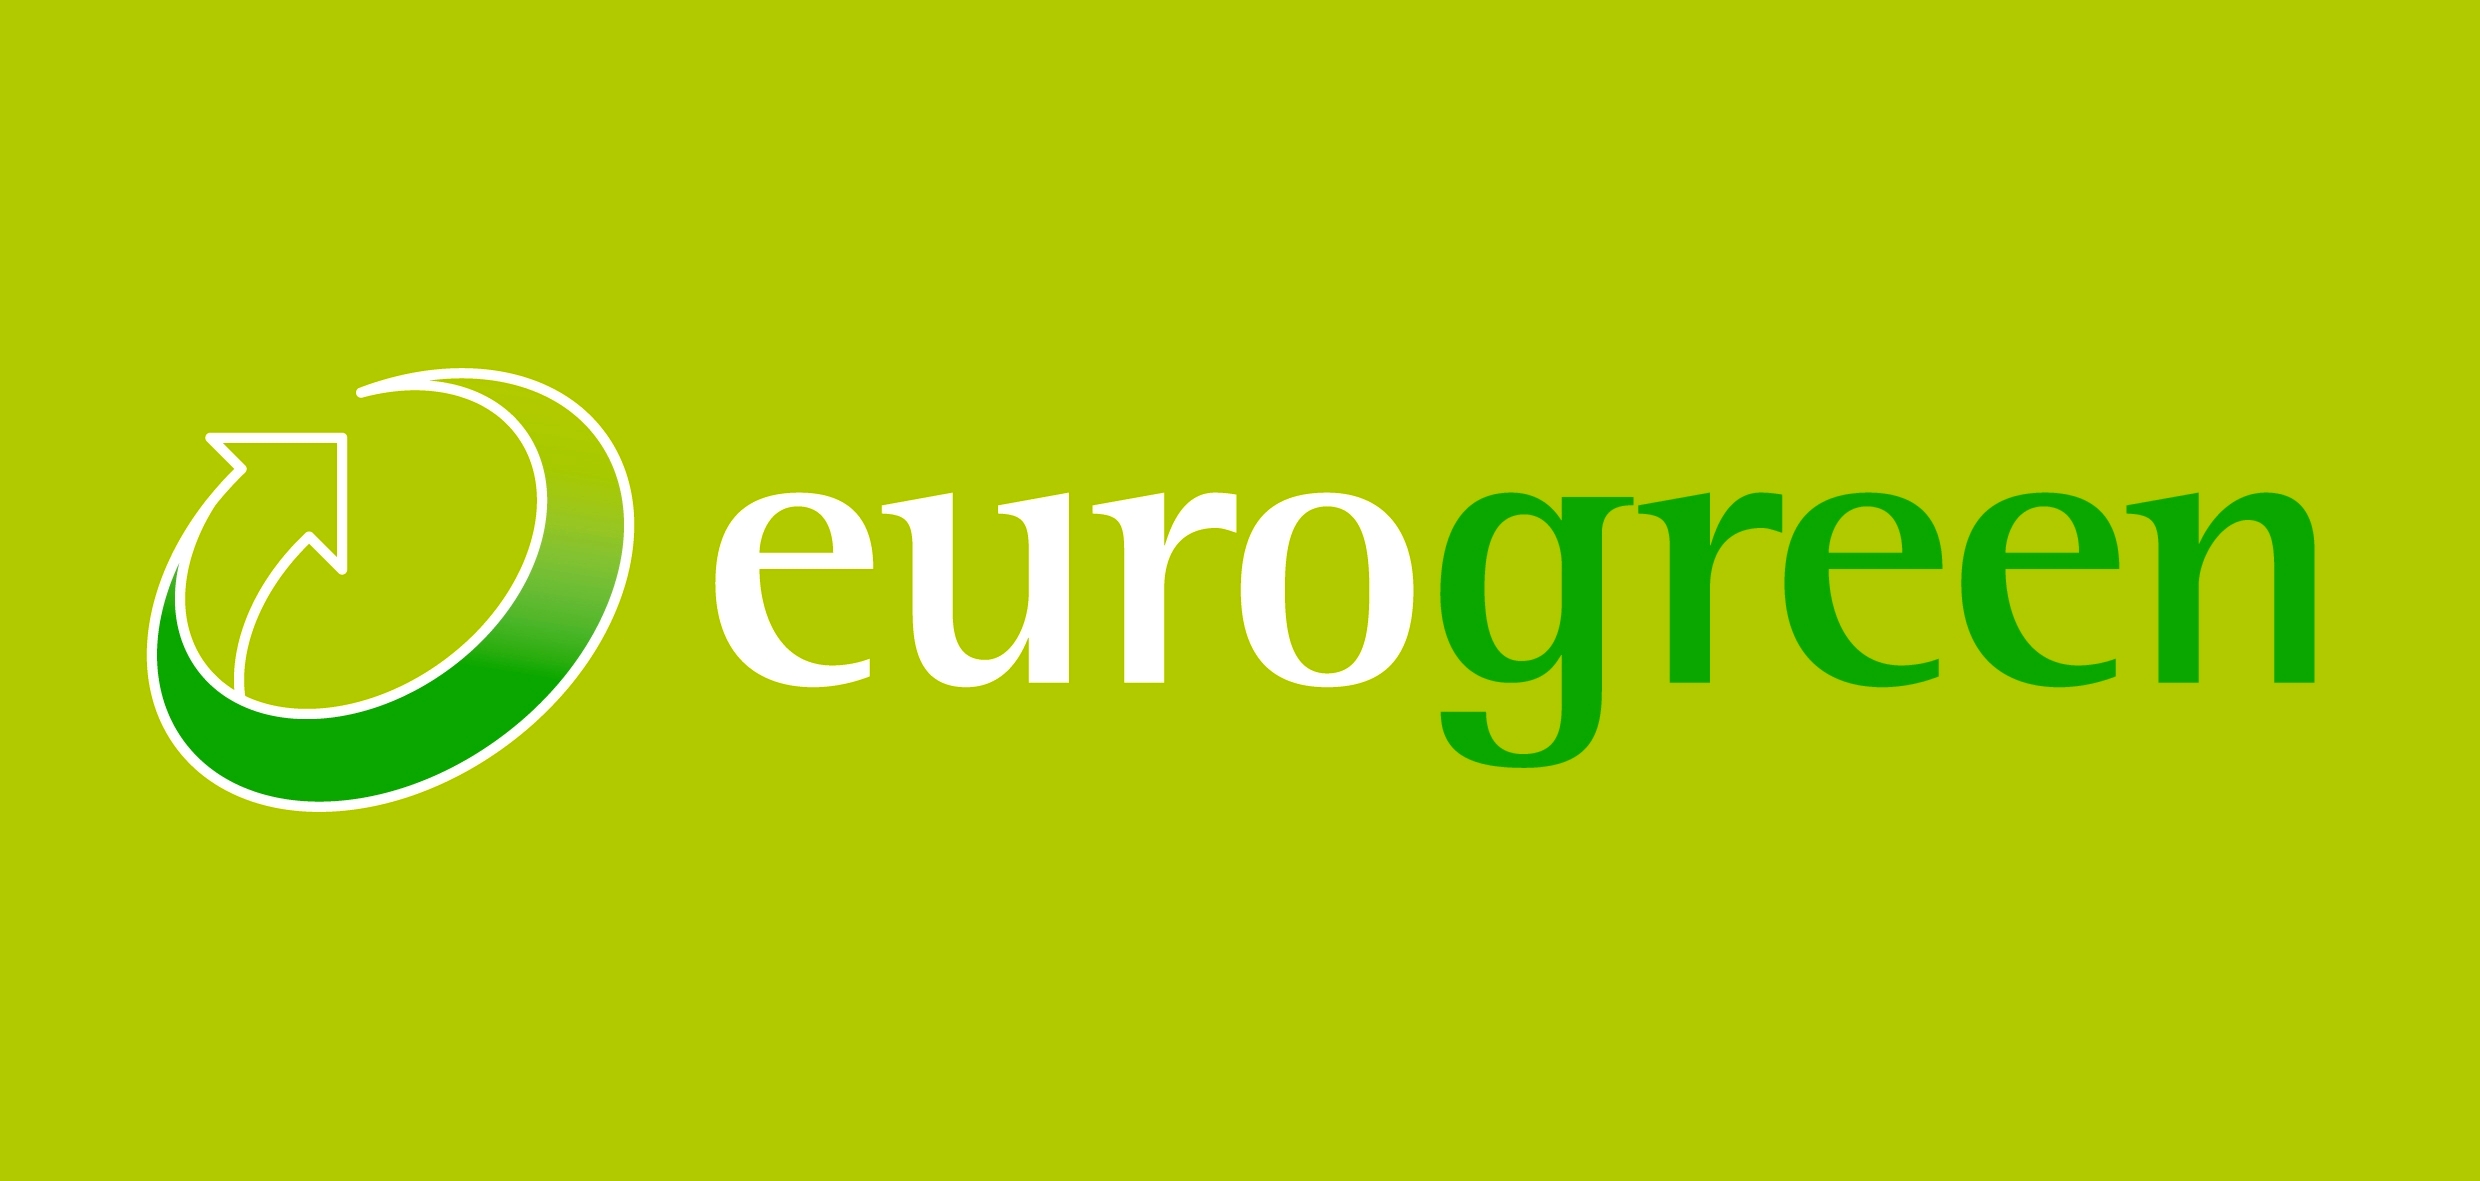 Eurogreen